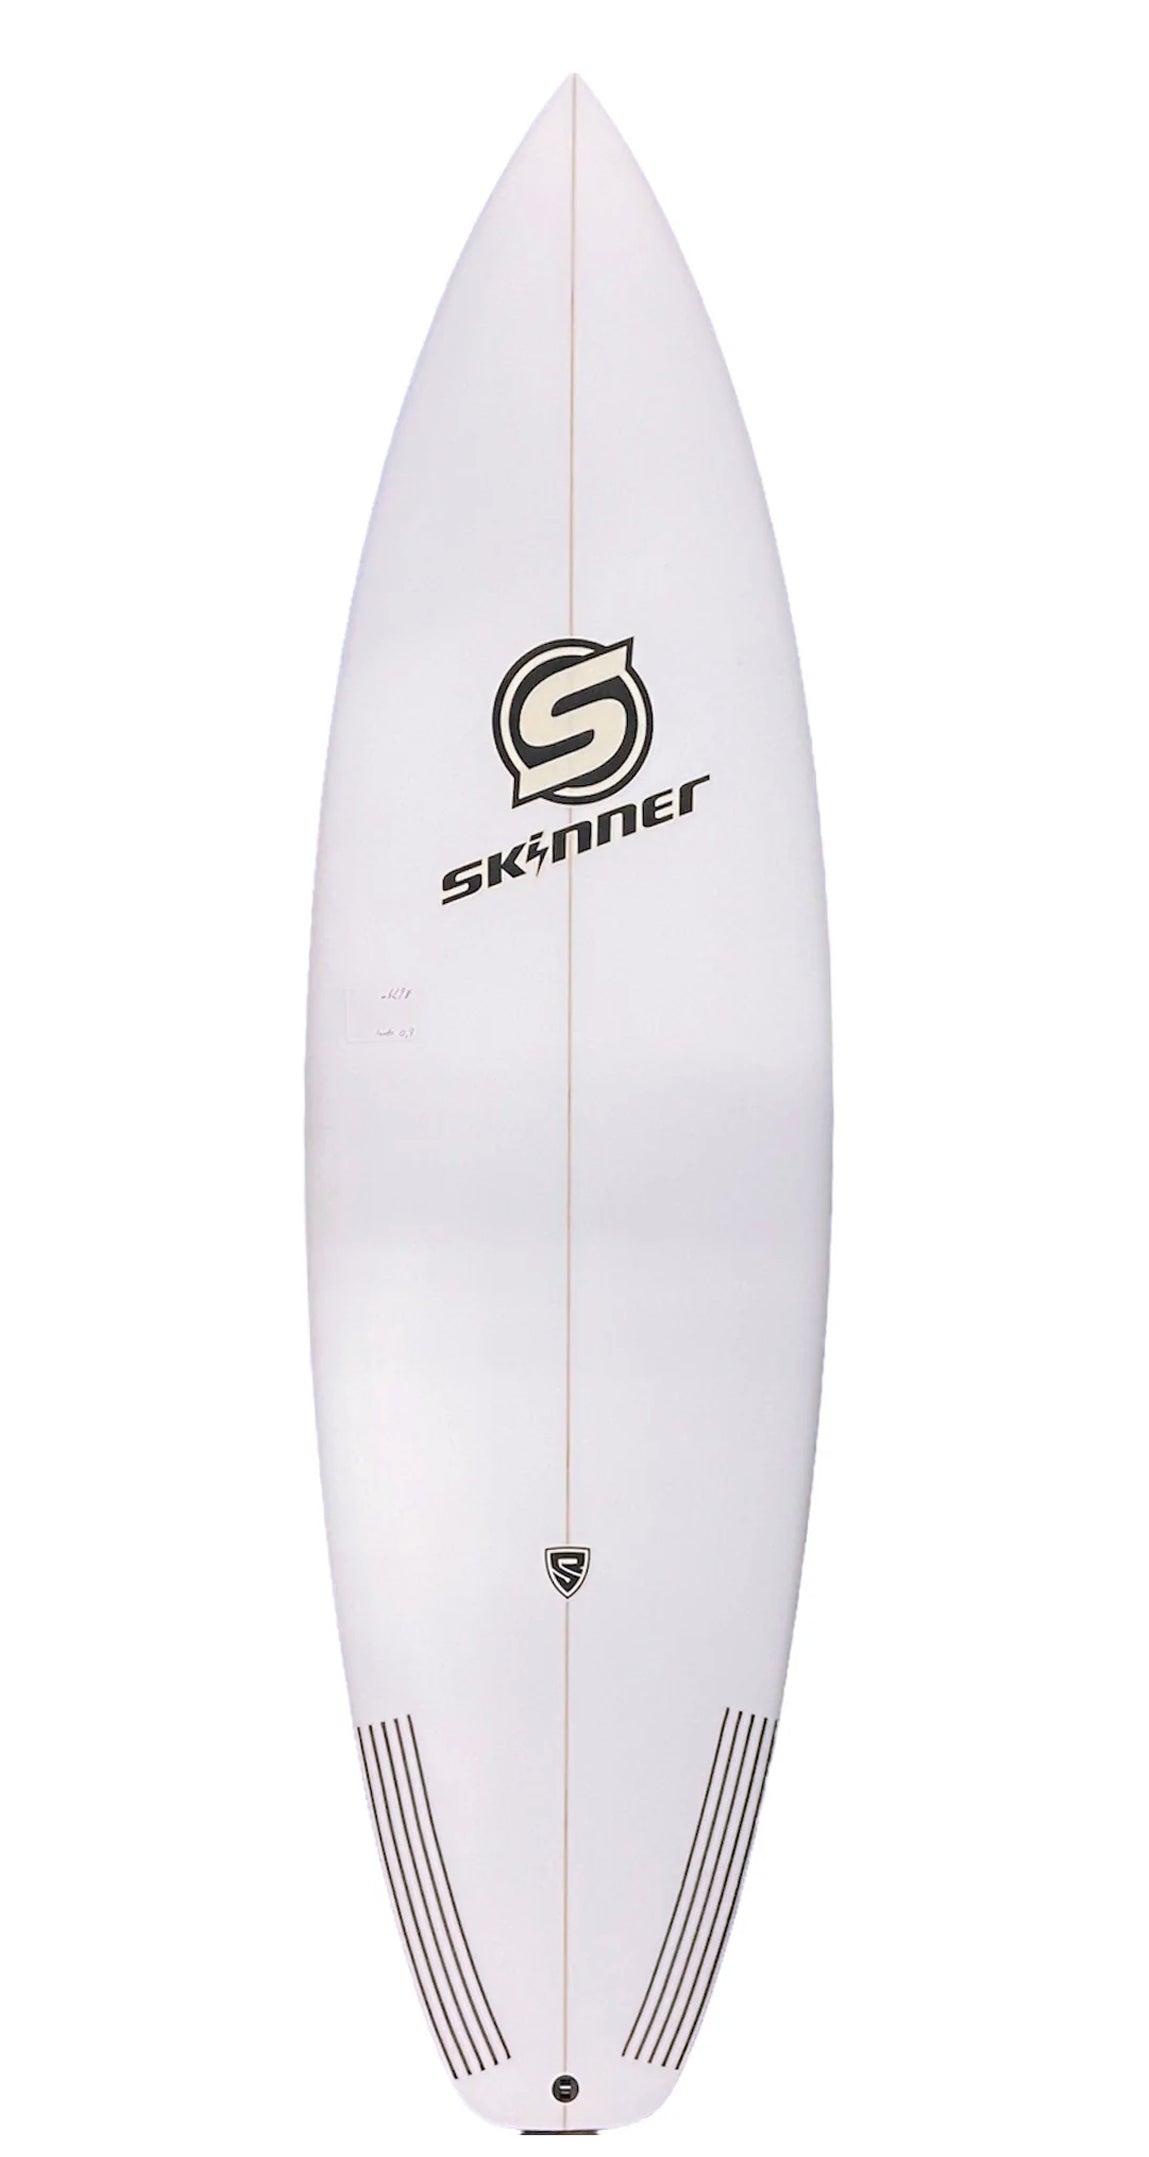 Skinner 6'0 x 19.8 Hyper Drive Epoxy Shortboard 5 Fin FCS II 30.3L Surfboard